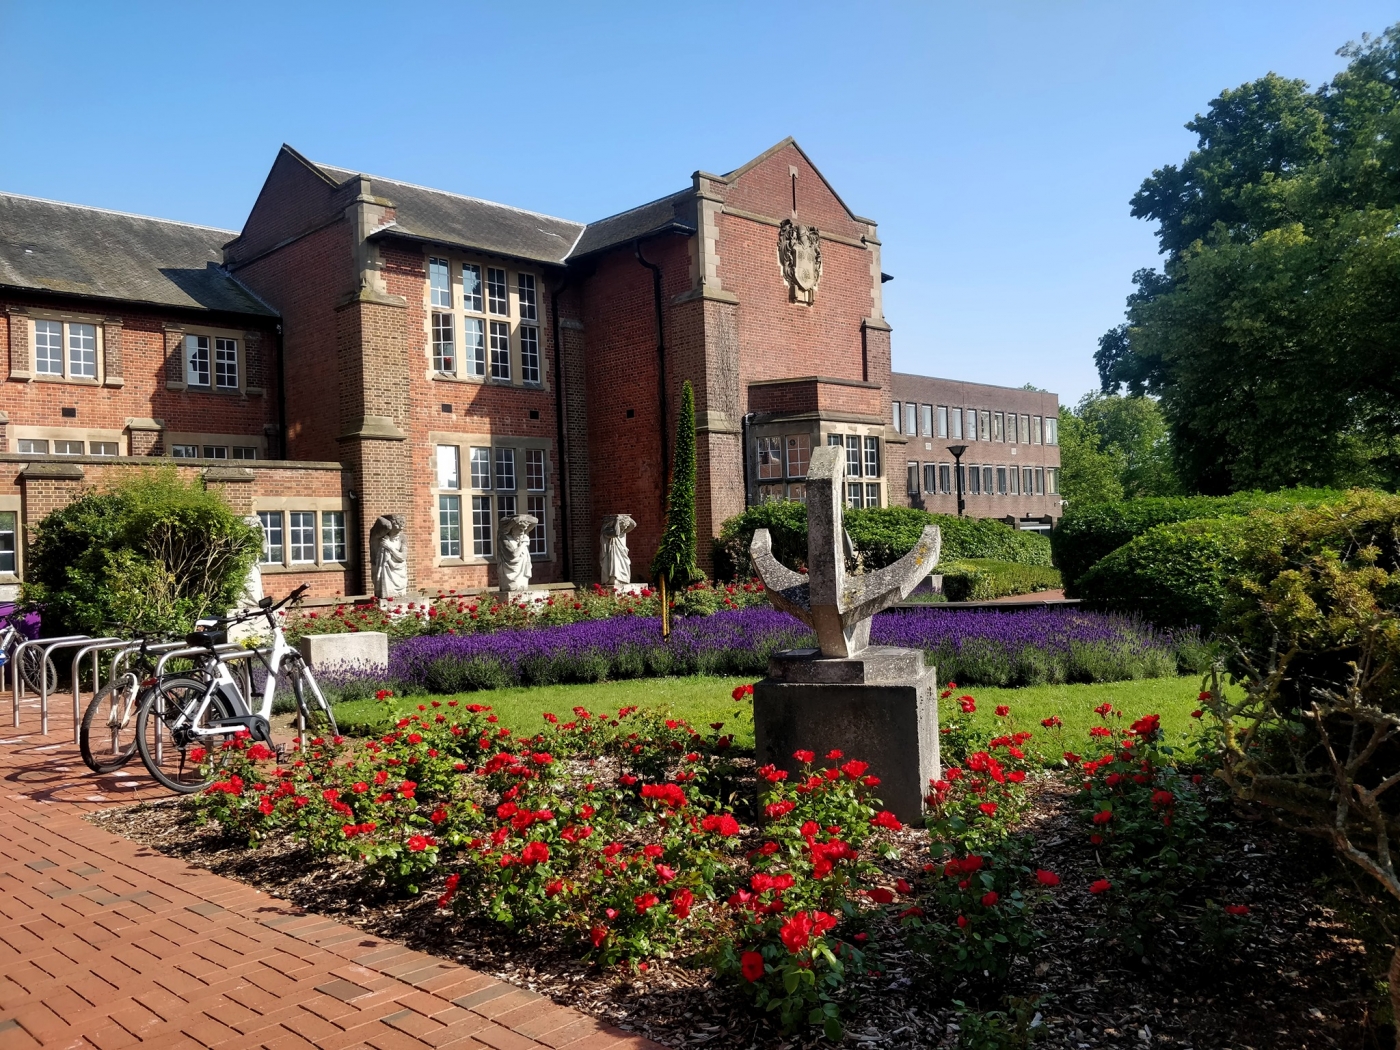 University of Southampton - Highfield Campus